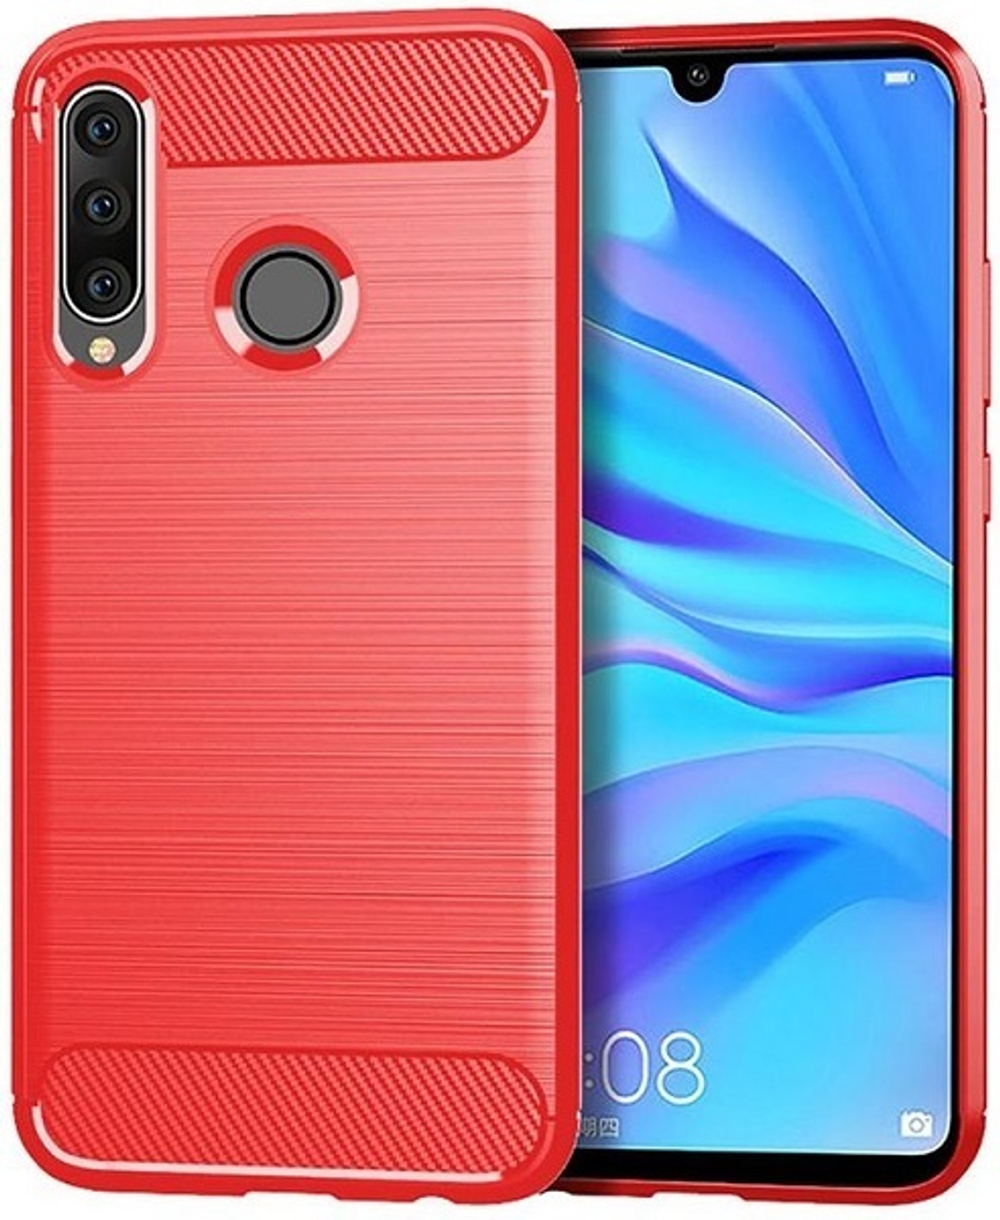 Чехол для Huawei P30 Lite (Nova 4E) цвет Red (красный), серия Carbon от Caseport